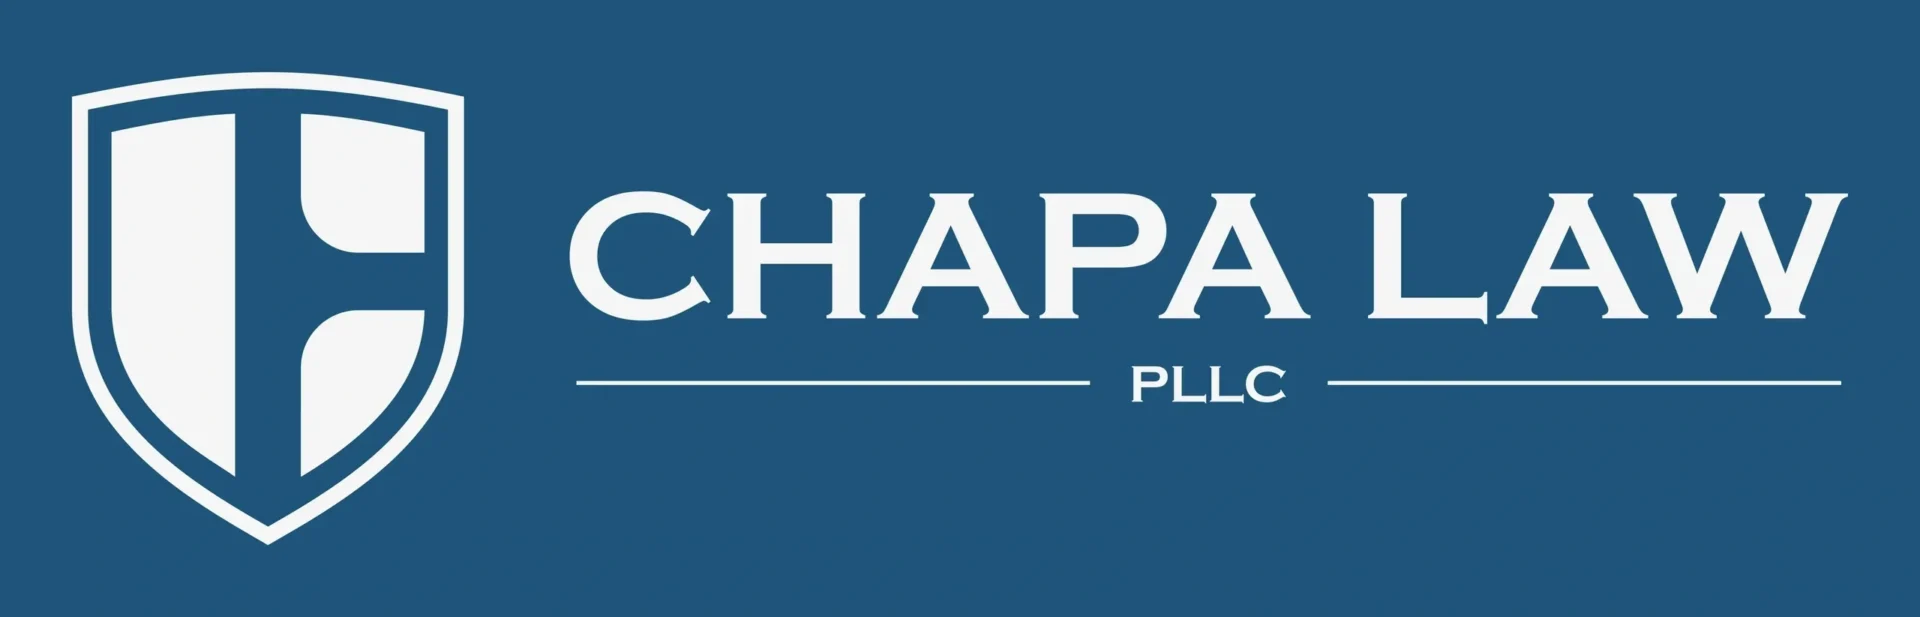 chapa law logo